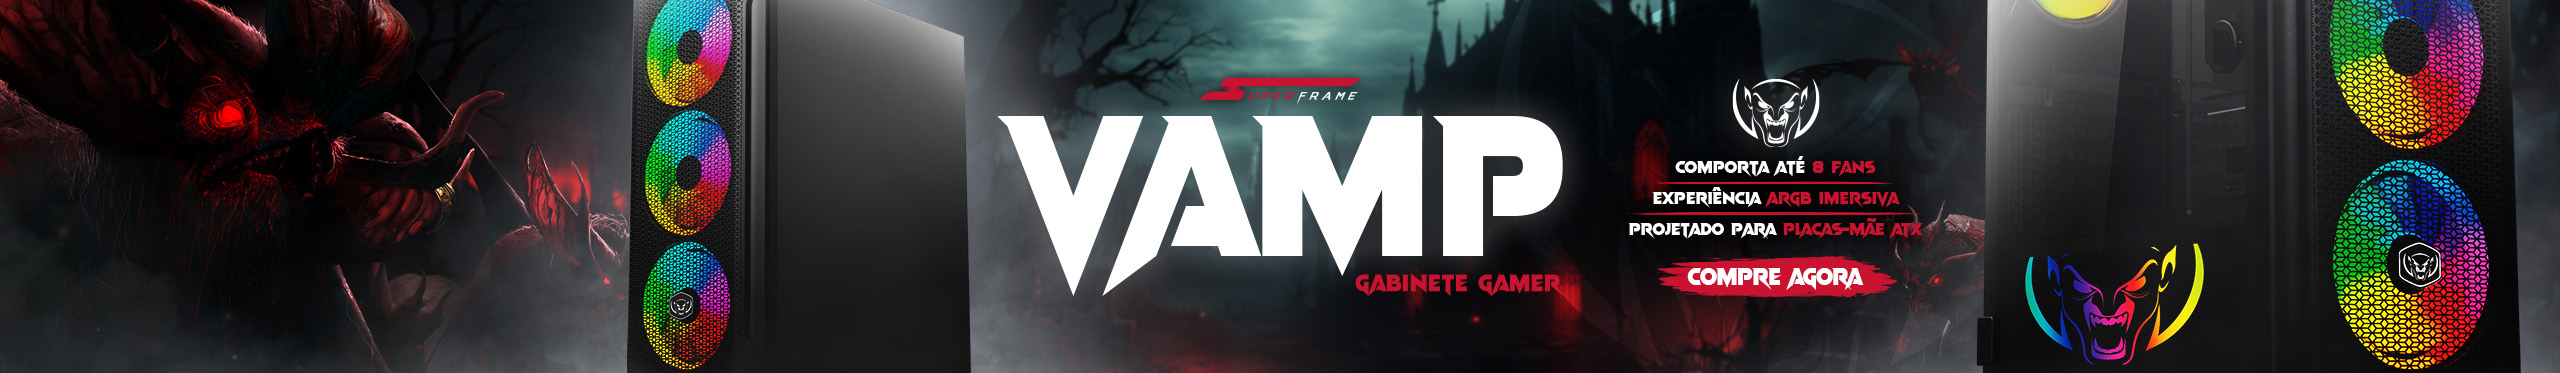 Gabinete Gamer SuperFrame Vamp | Para noites de jogatina. Saiba mais!